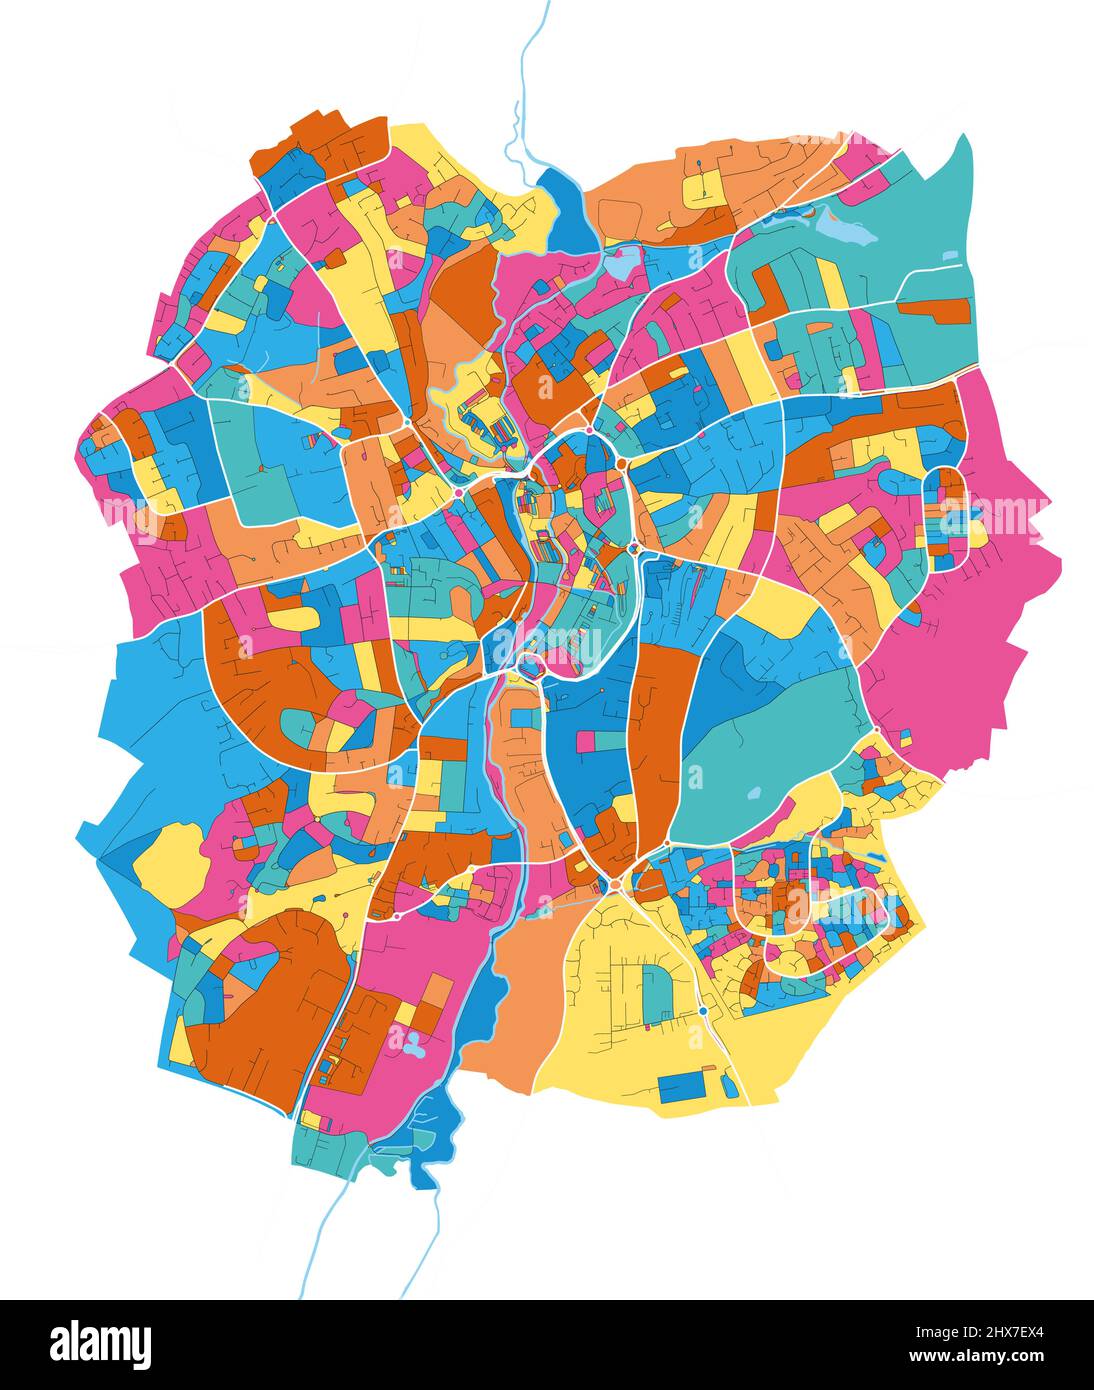 Kidderminster, West Midlands, Inghilterra colorata mappa vettoriale ad alta risoluzione con i confini della città. Contorni bianchi per le strade principali. Molti dettagli. Blu Illustrazione Vettoriale